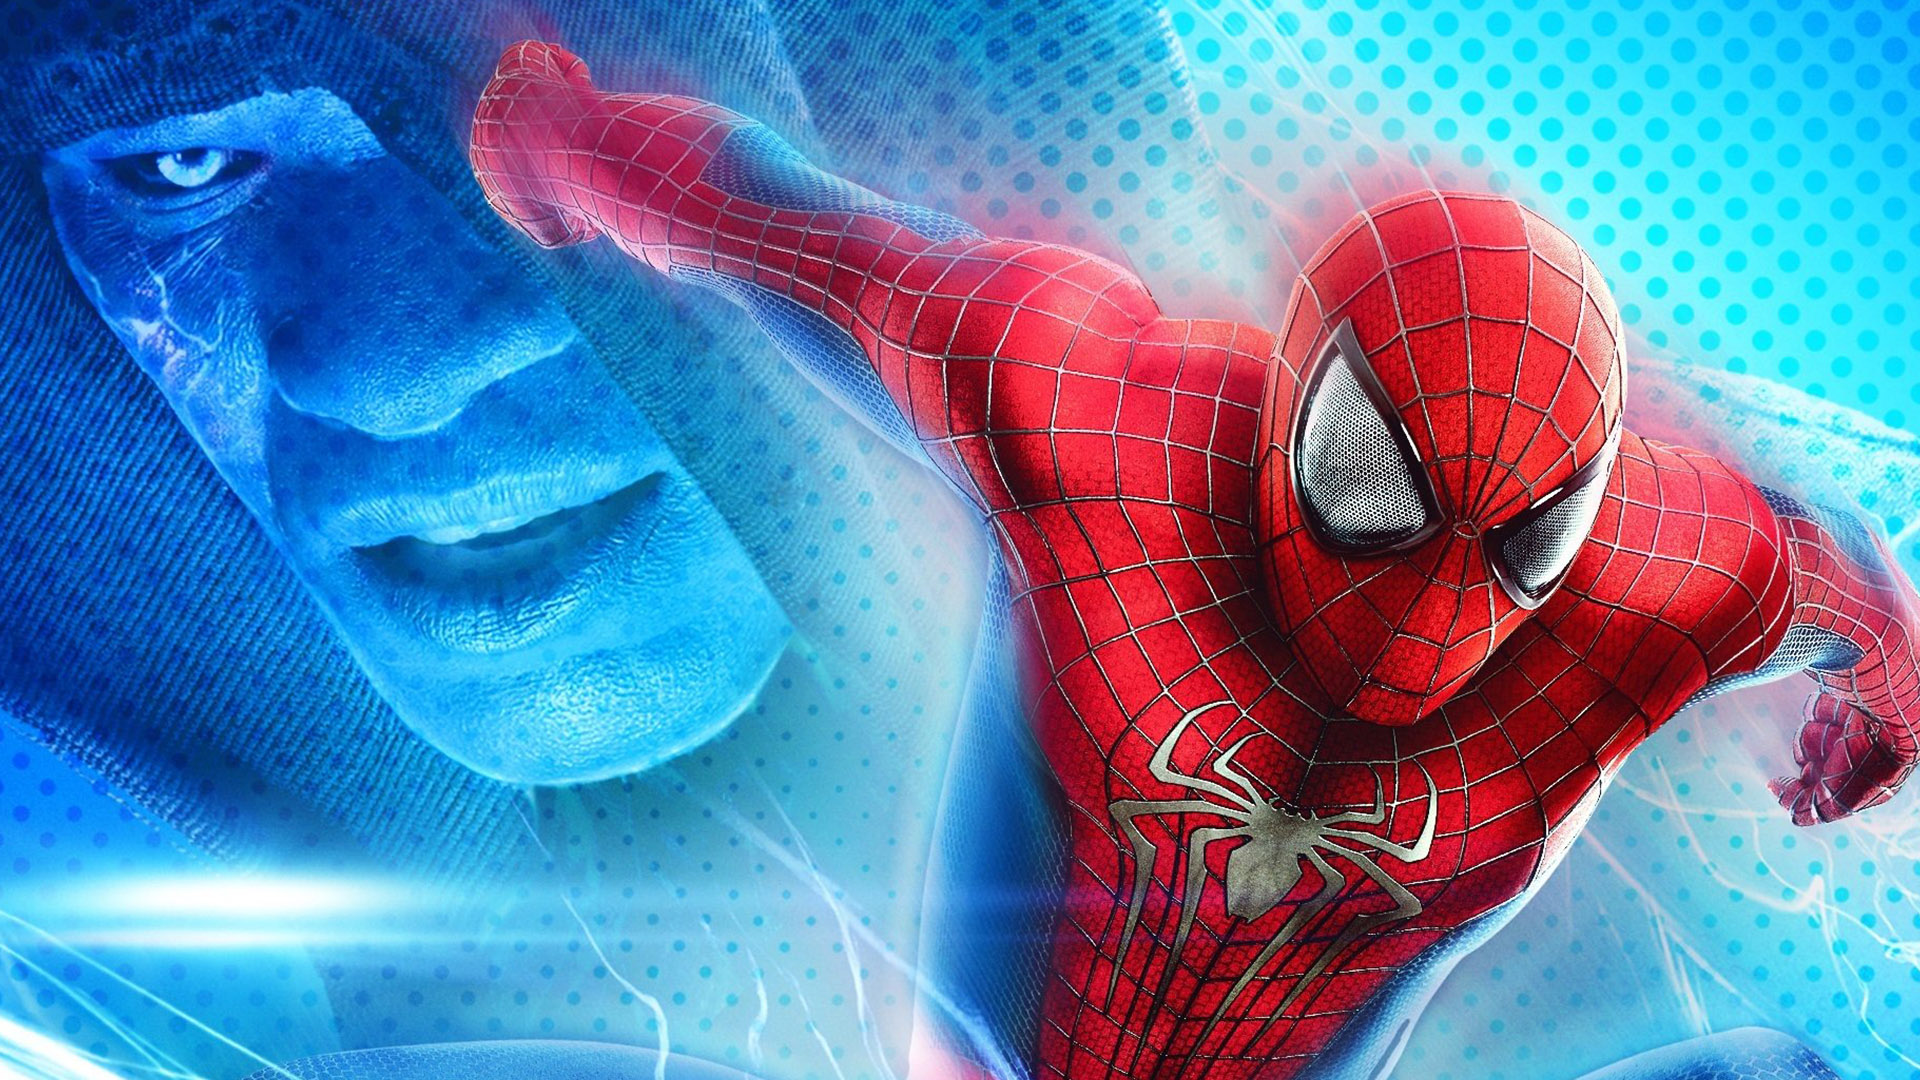 l'incroyable spider man 2 hd fond d'écran,homme araignée,illustration,personnage fictif,conception graphique,oeuvre de cg